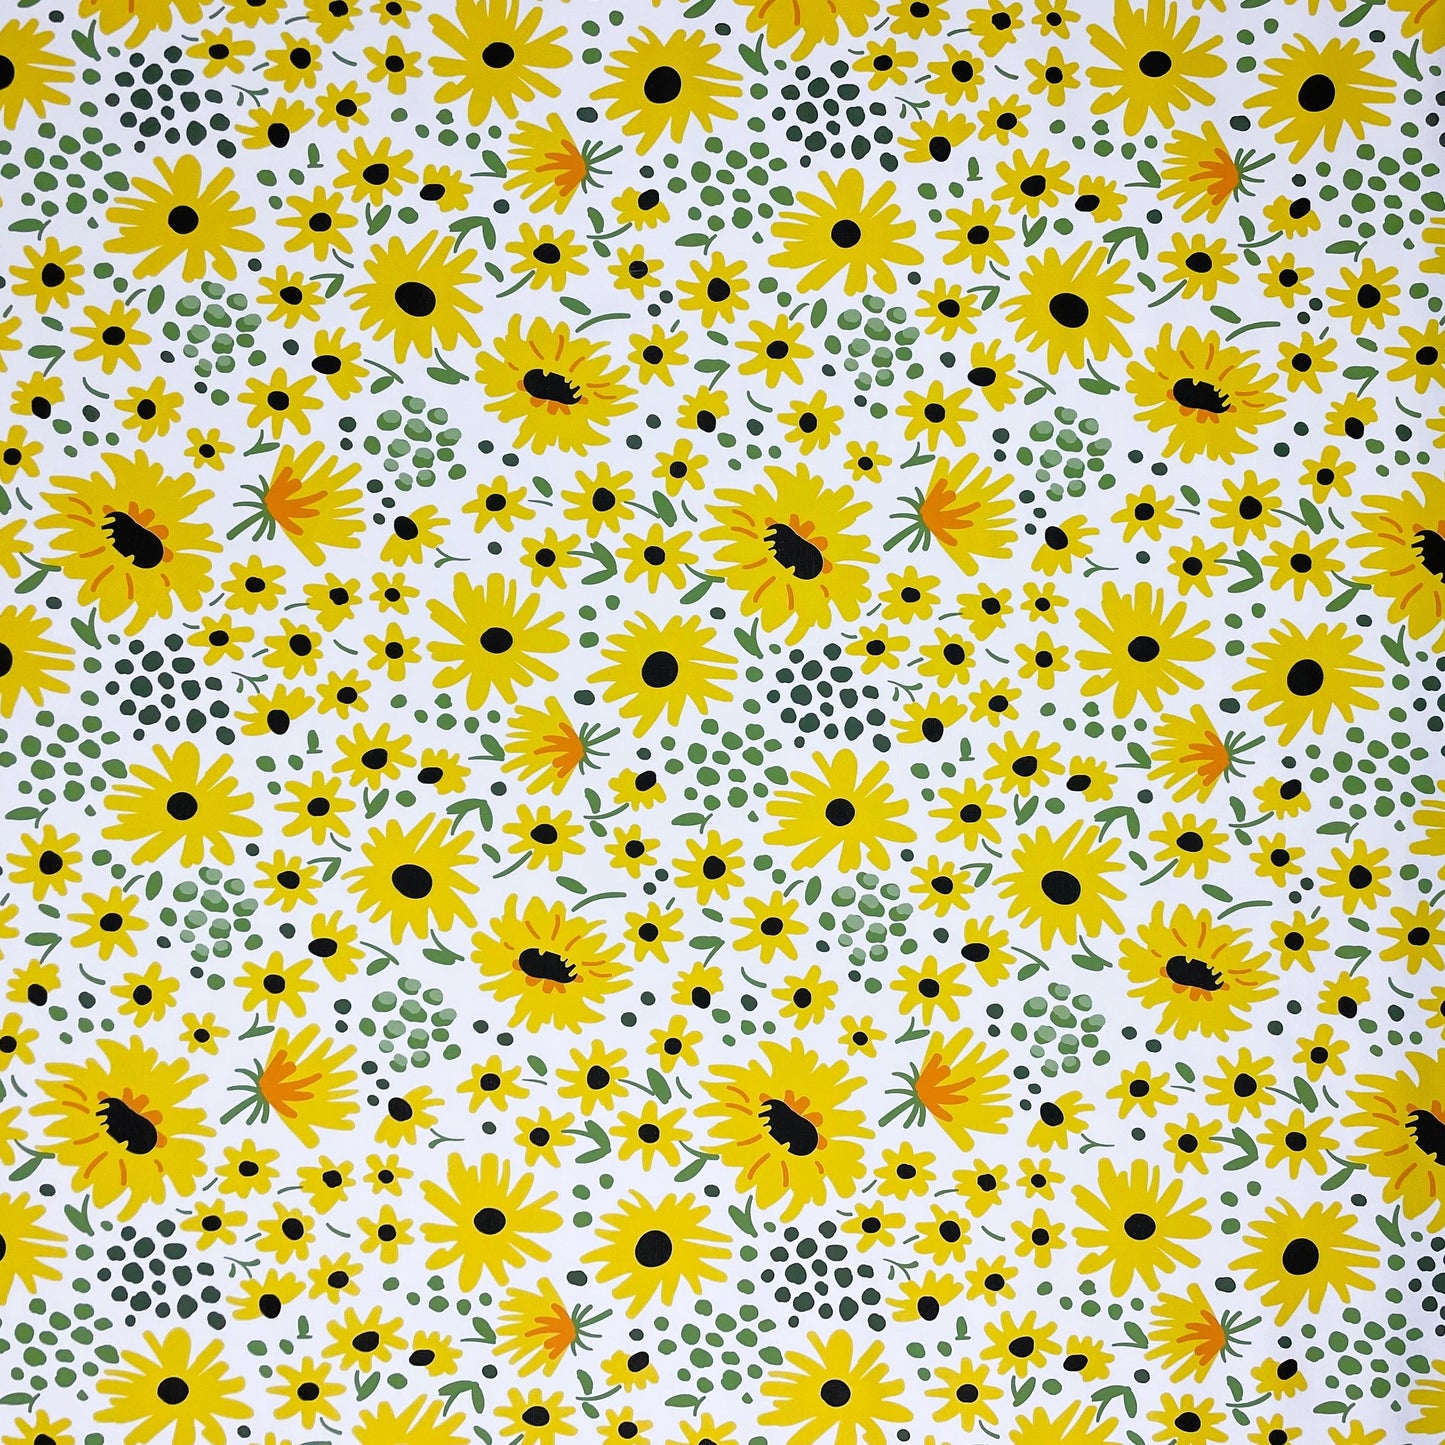 Wachstuchtischdecke Sonnenblumen Blüten Sommer kevkus eckig rund oval kaufen